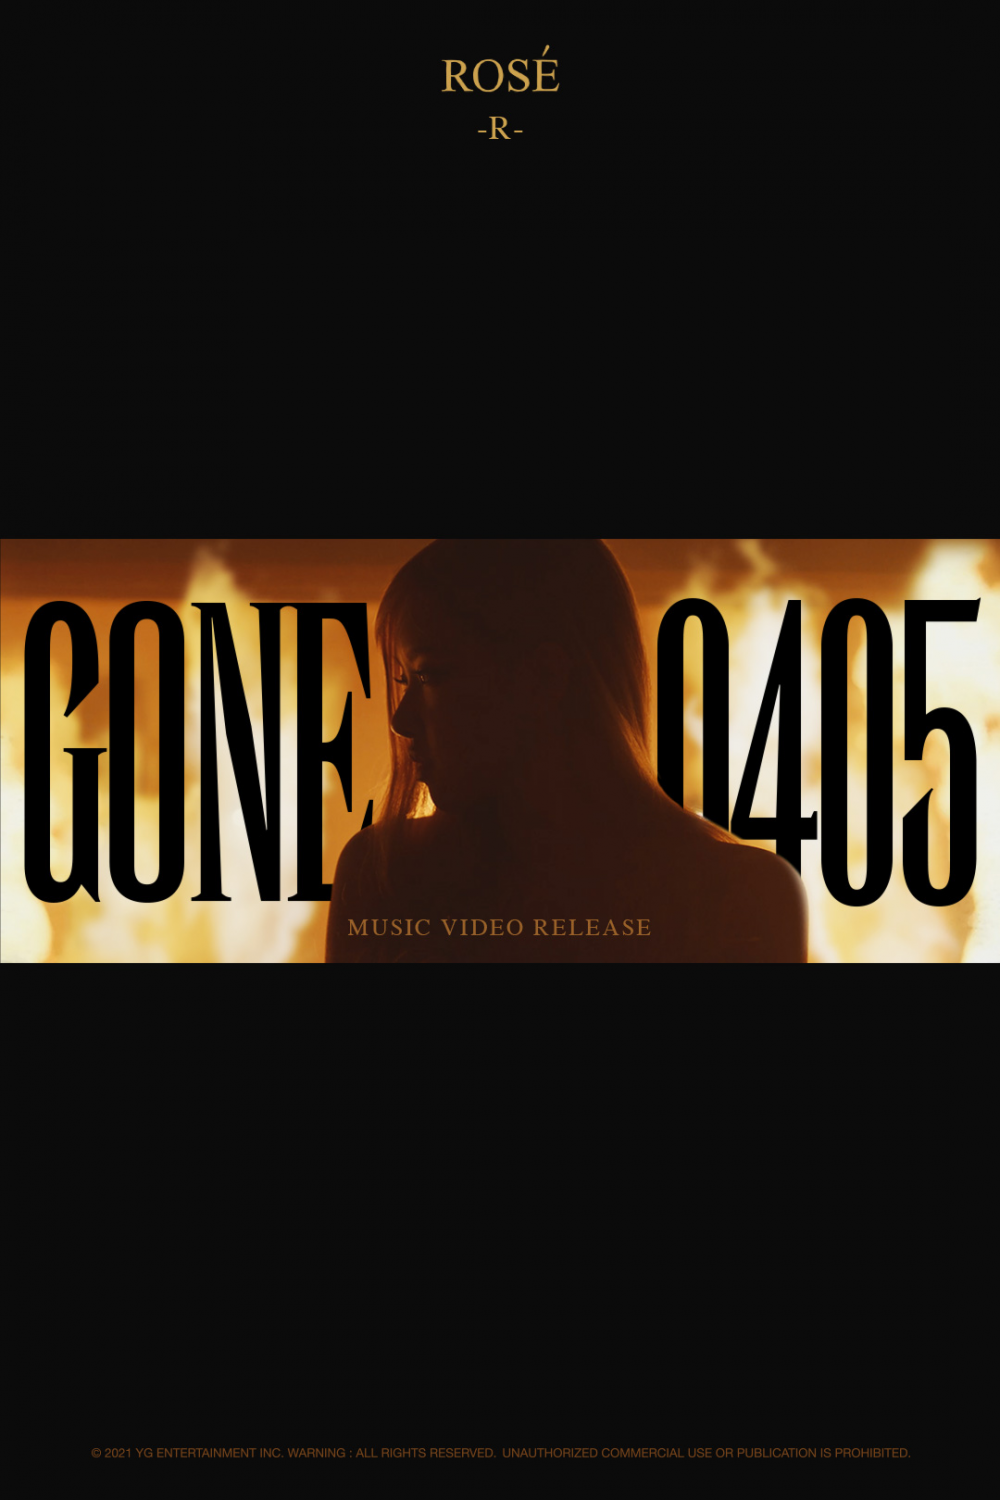 [Релиз] Розэ клип "Gone": музыкальный клип "Gone"